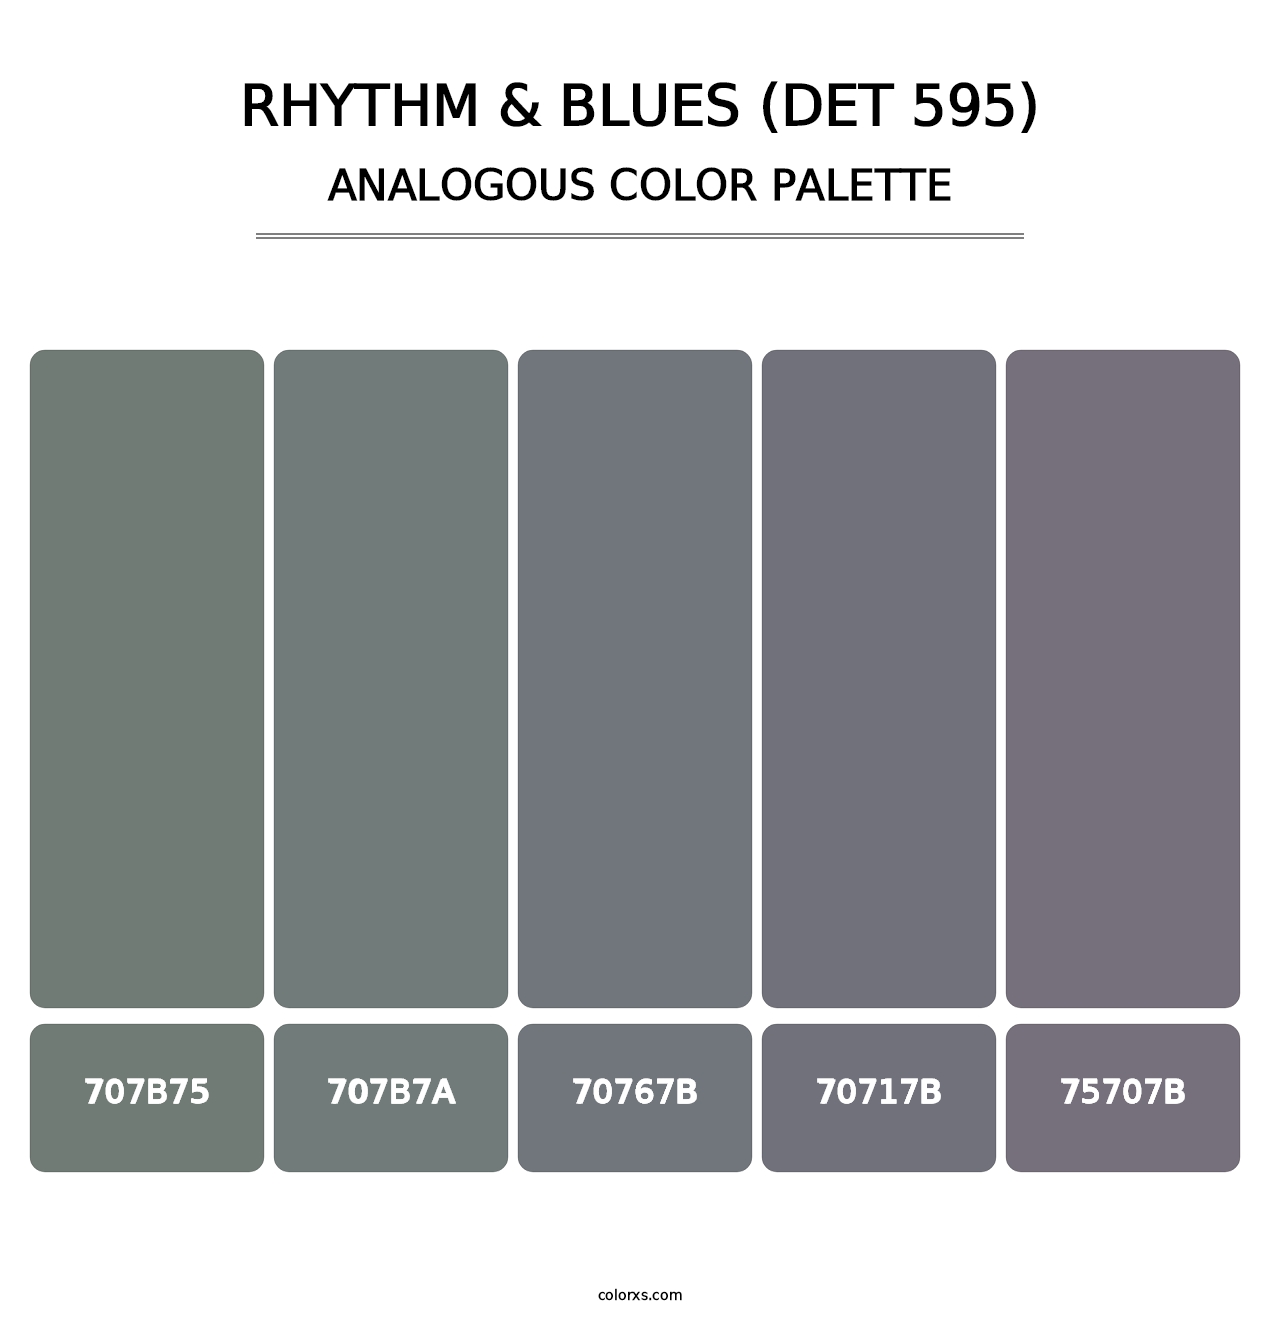 Rhythm & Blues (DET 595) - Analogous Color Palette